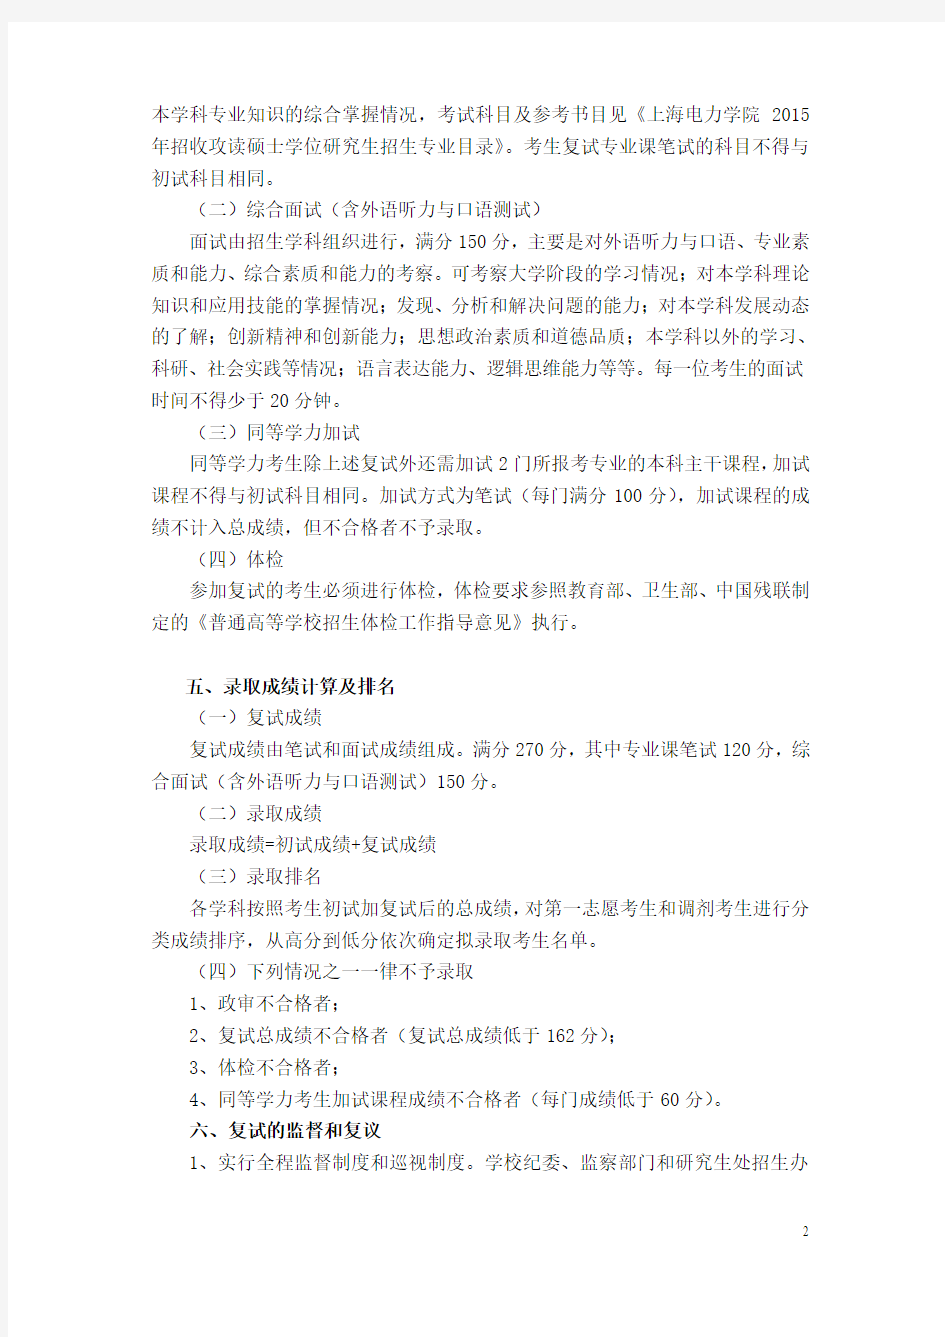 上海电力学院2015年硕士研究生招复试工作办法